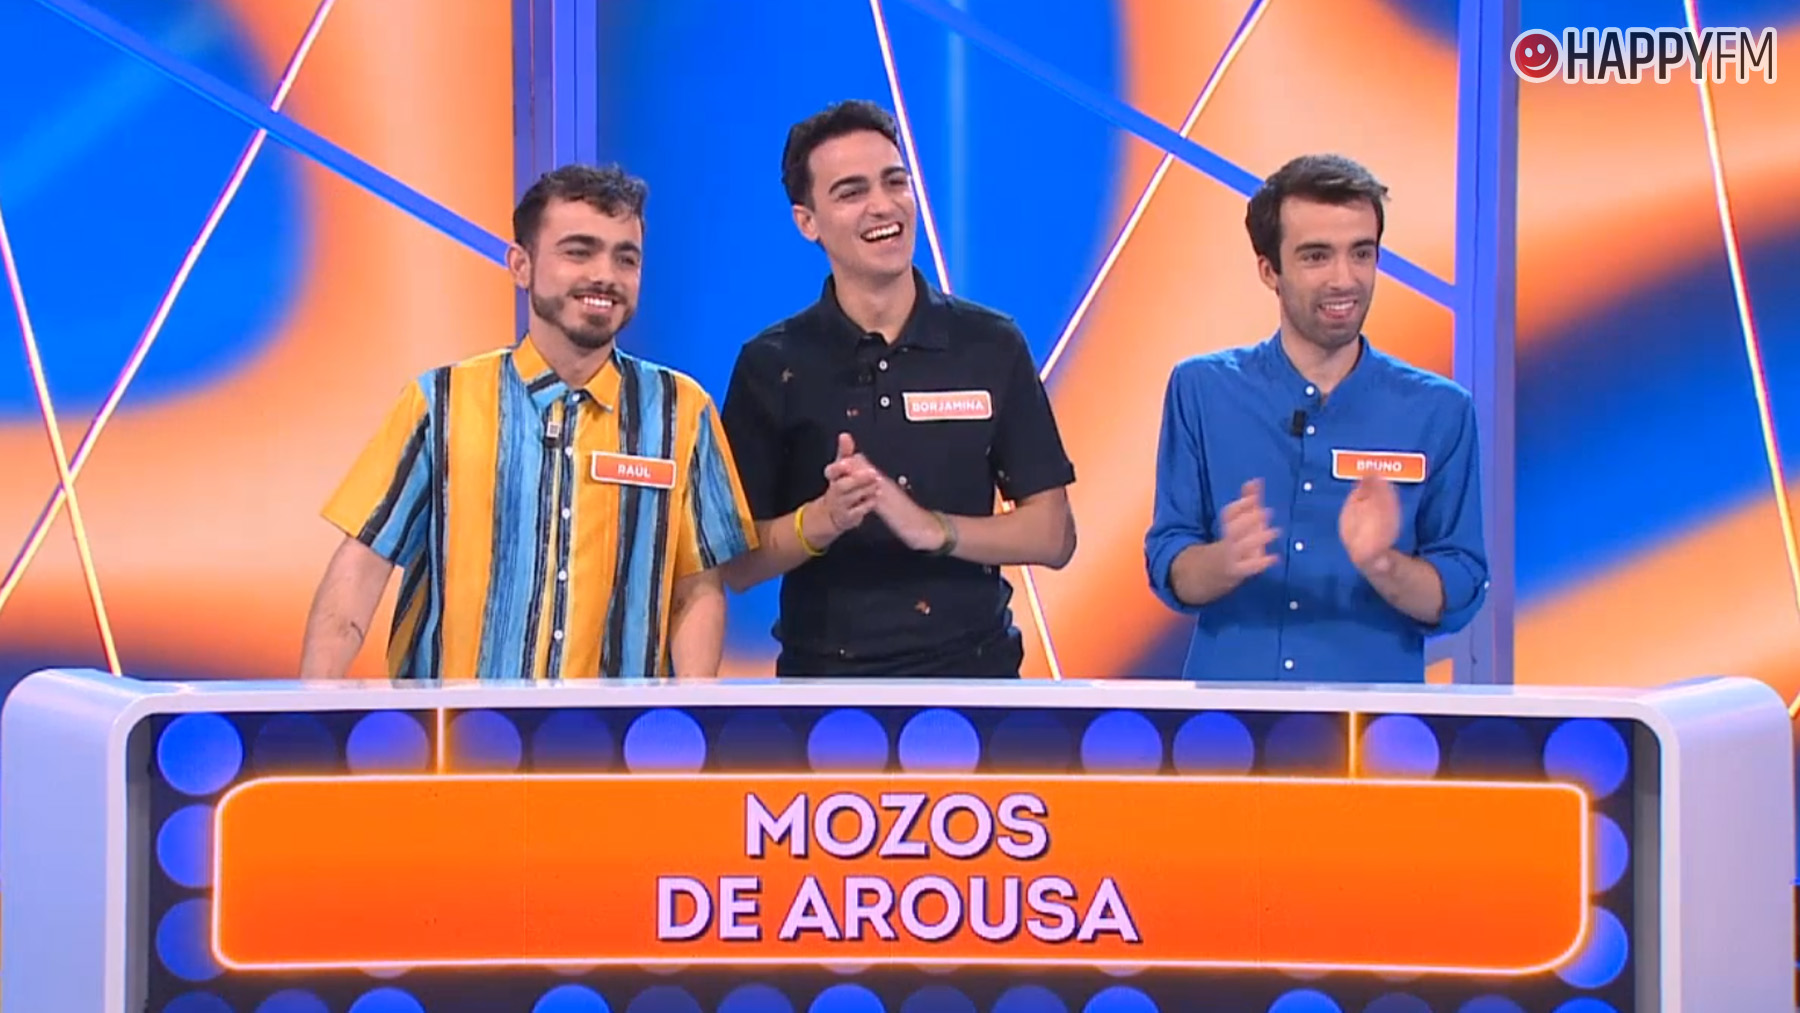 Los Mozos de Arousa, concursantes de Reacción en cadena. (Mediaset)